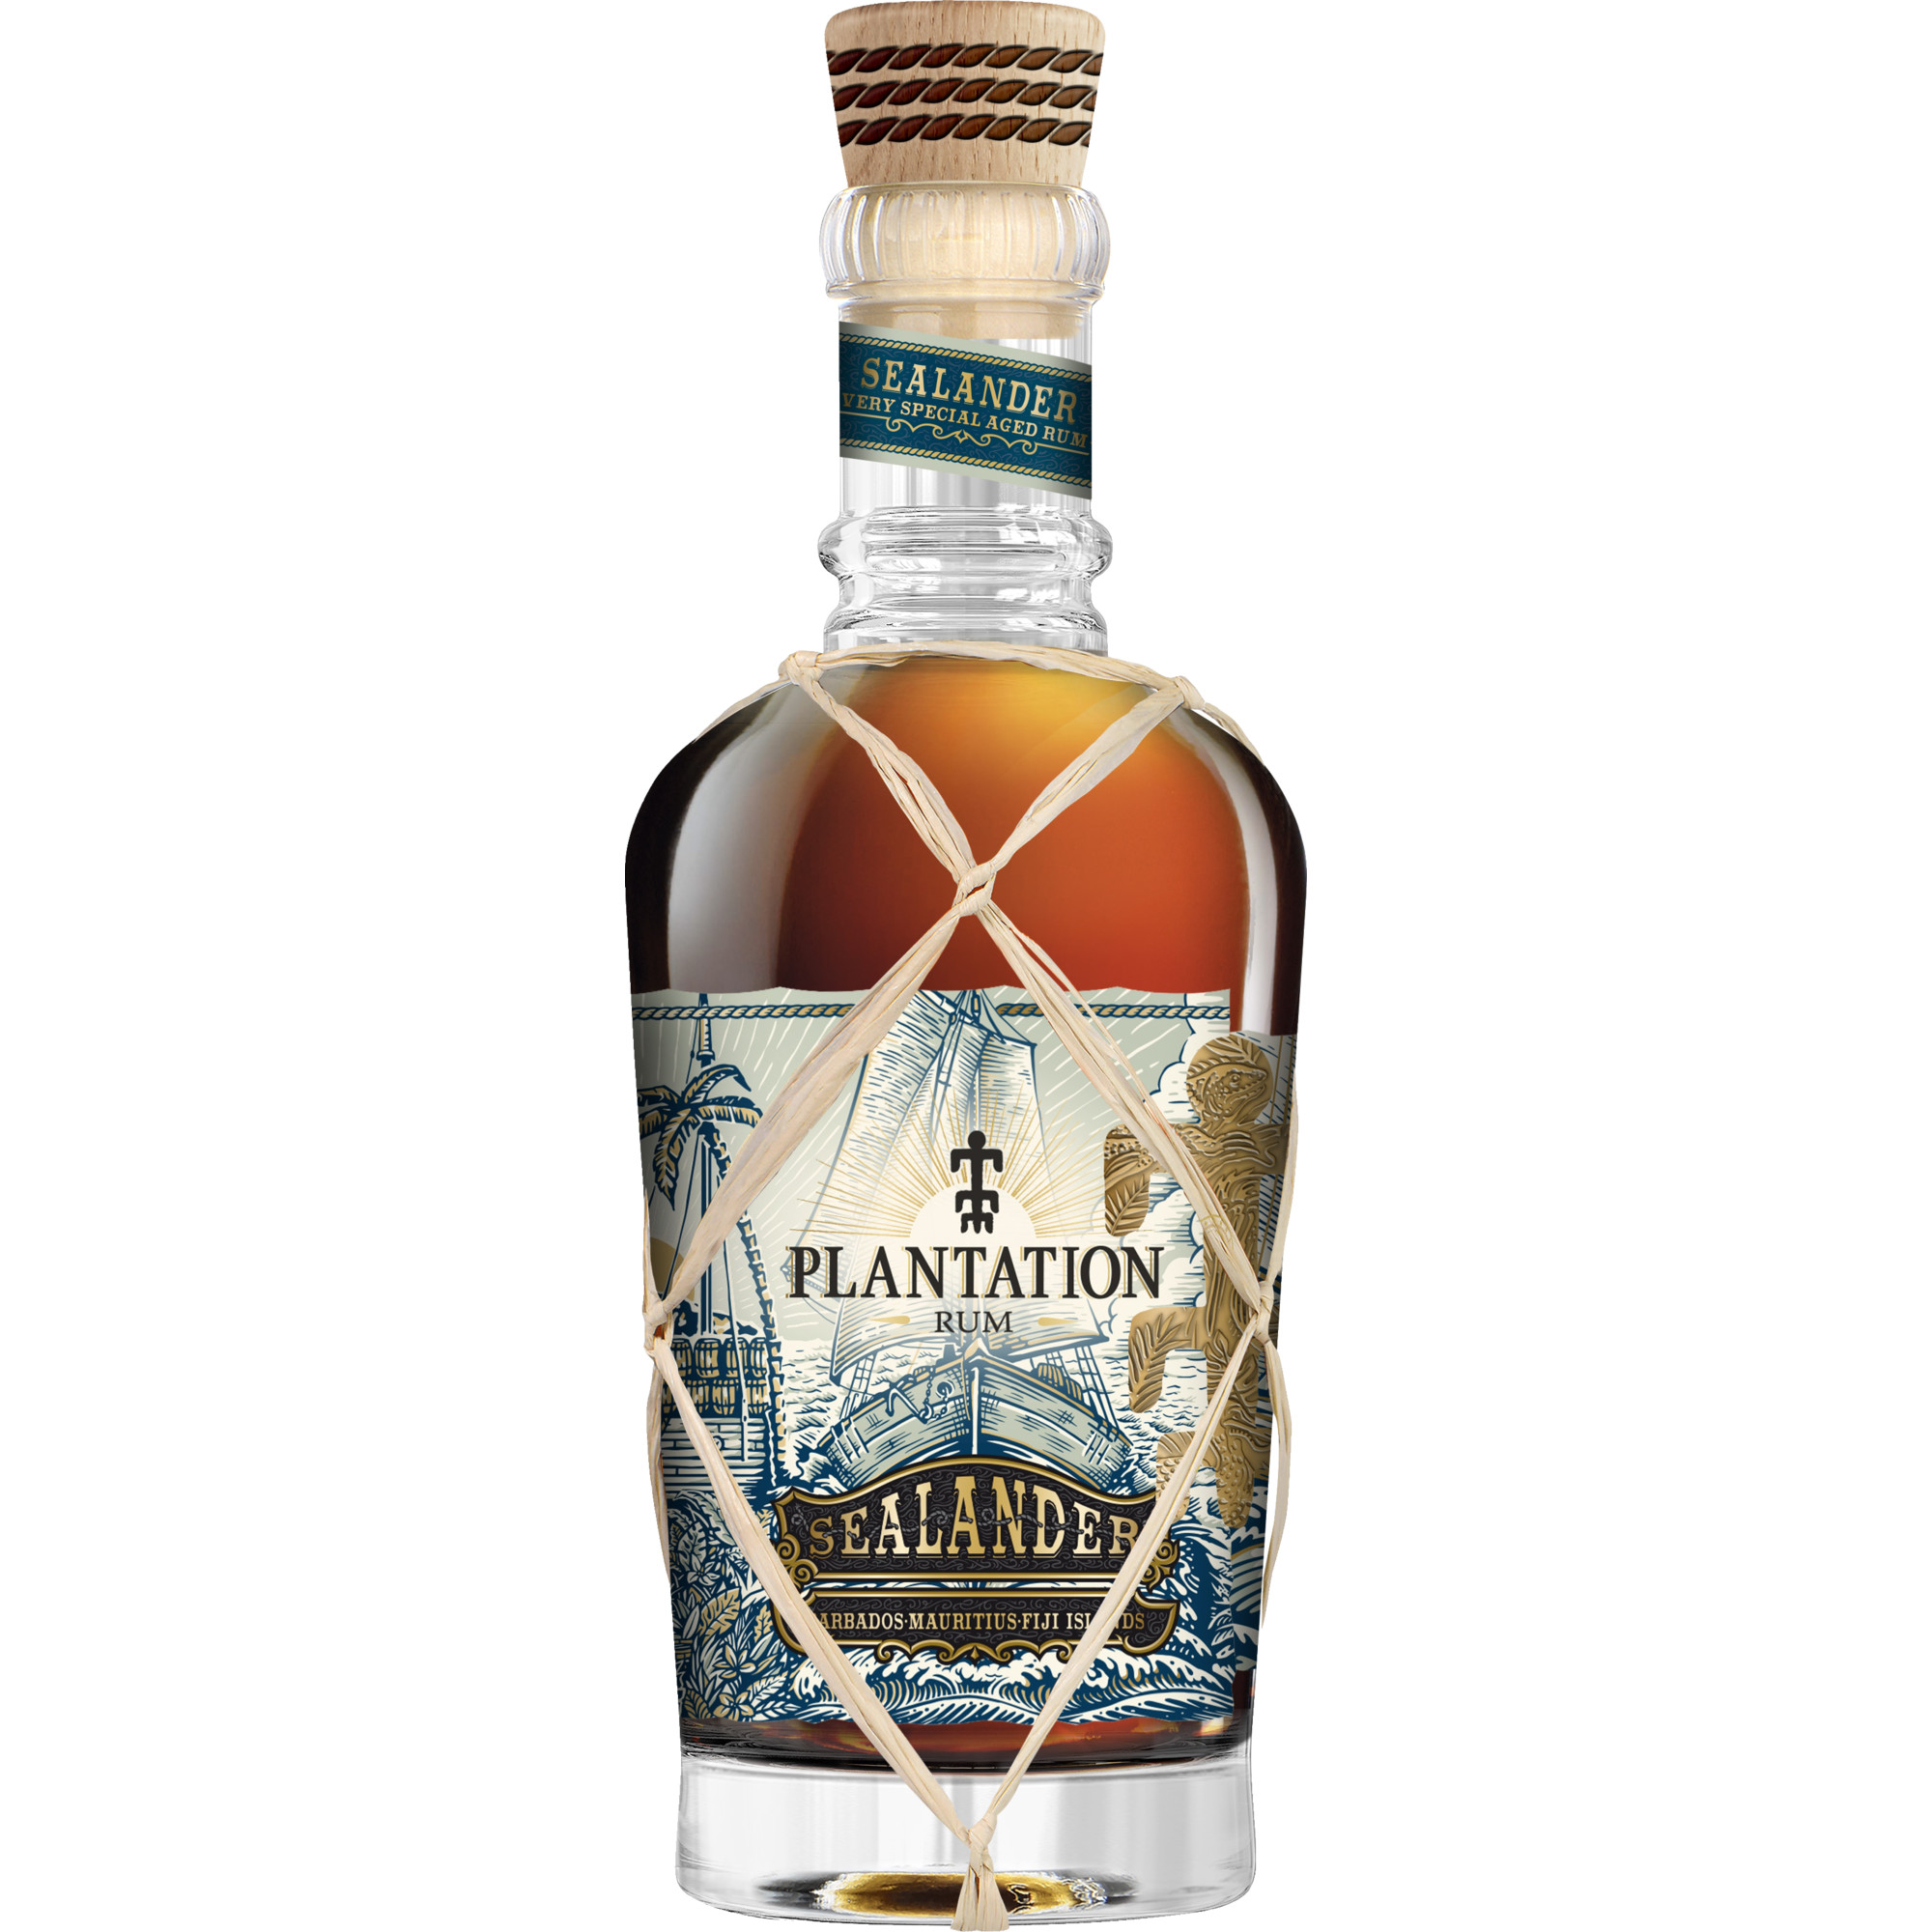 Plantation Rum Sealander, Barbados, 0,7 L, 40% Vol., Spirituosen Ferrand Deutschland GmbH, Sundernallee 75, D-53636 Iserlohn Hawesko DE